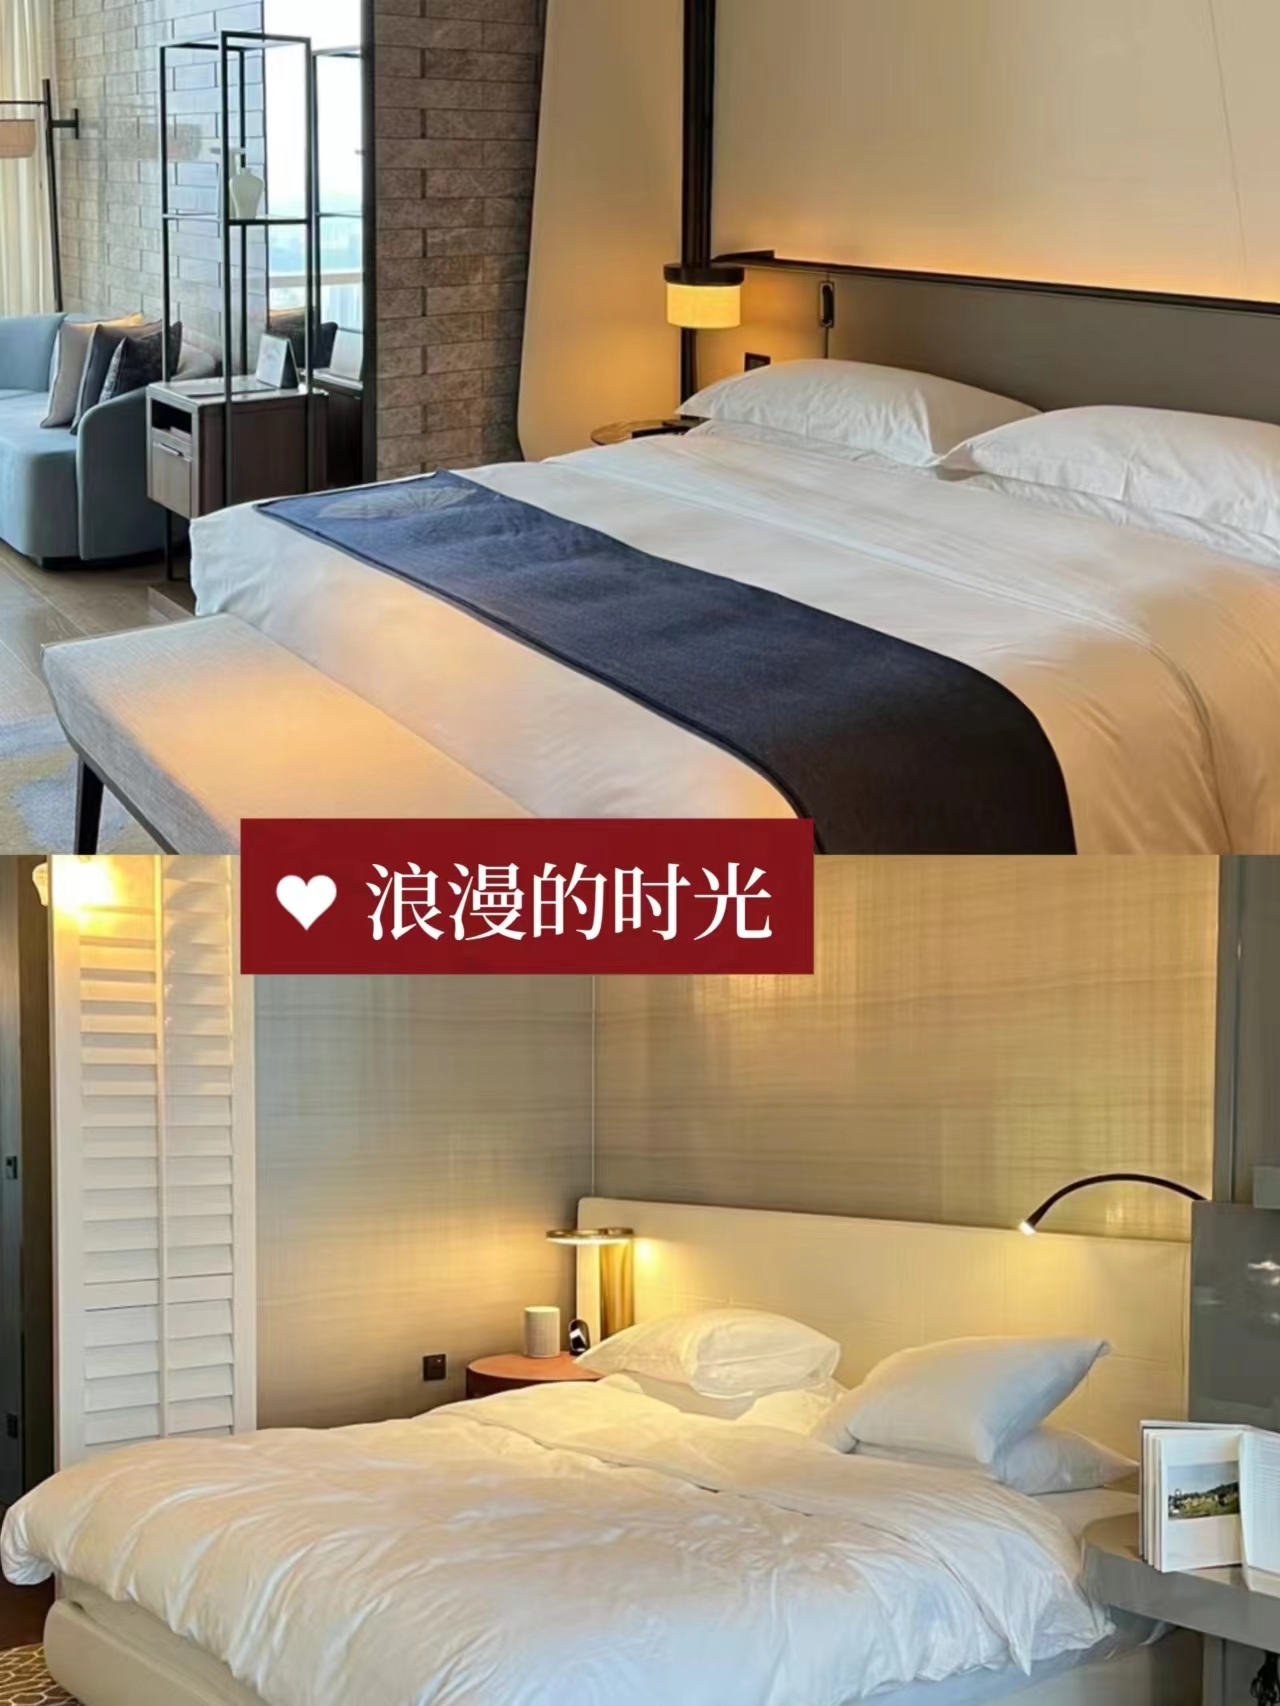 深圳 500元的四季酒店住到啦!